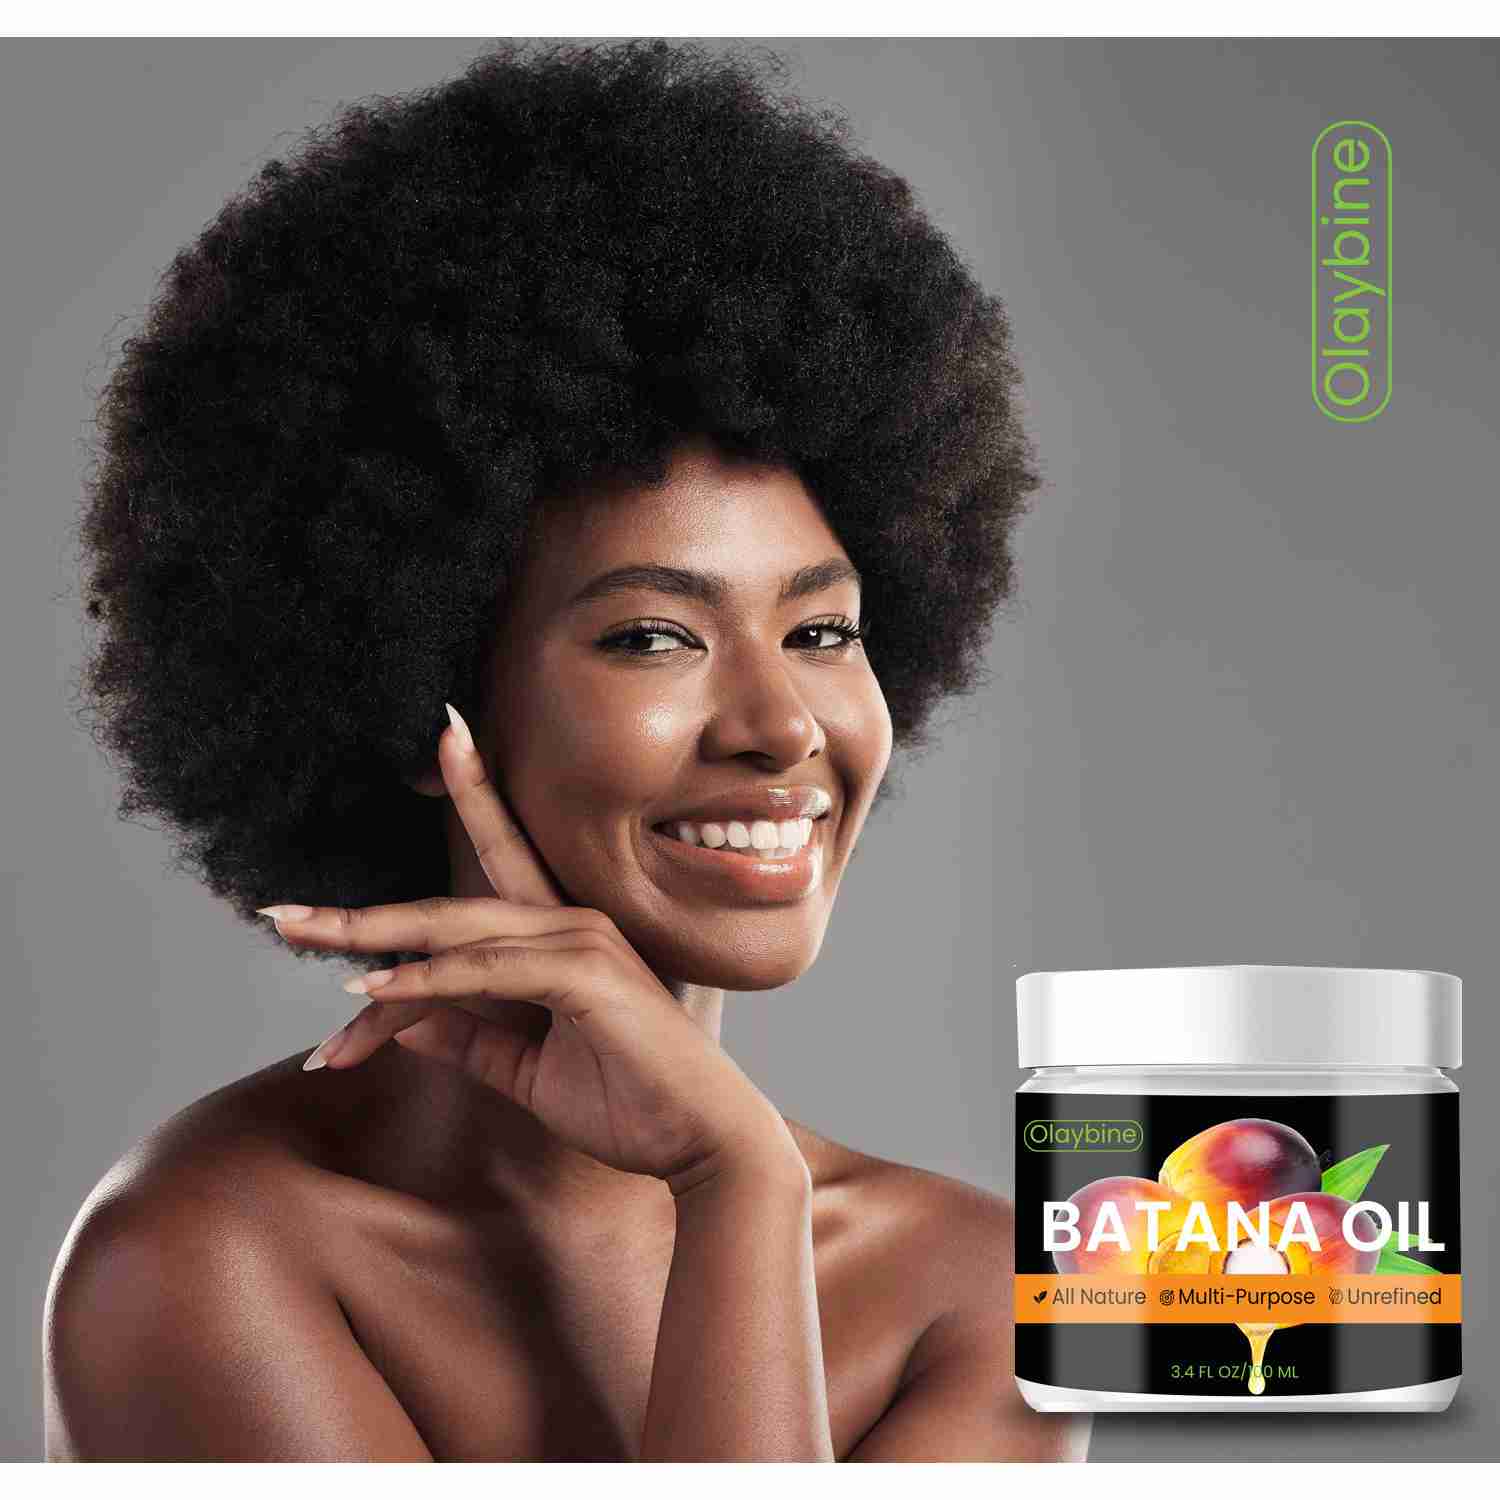 batana-oil-for-hair-growth-by-olaybine with discount code